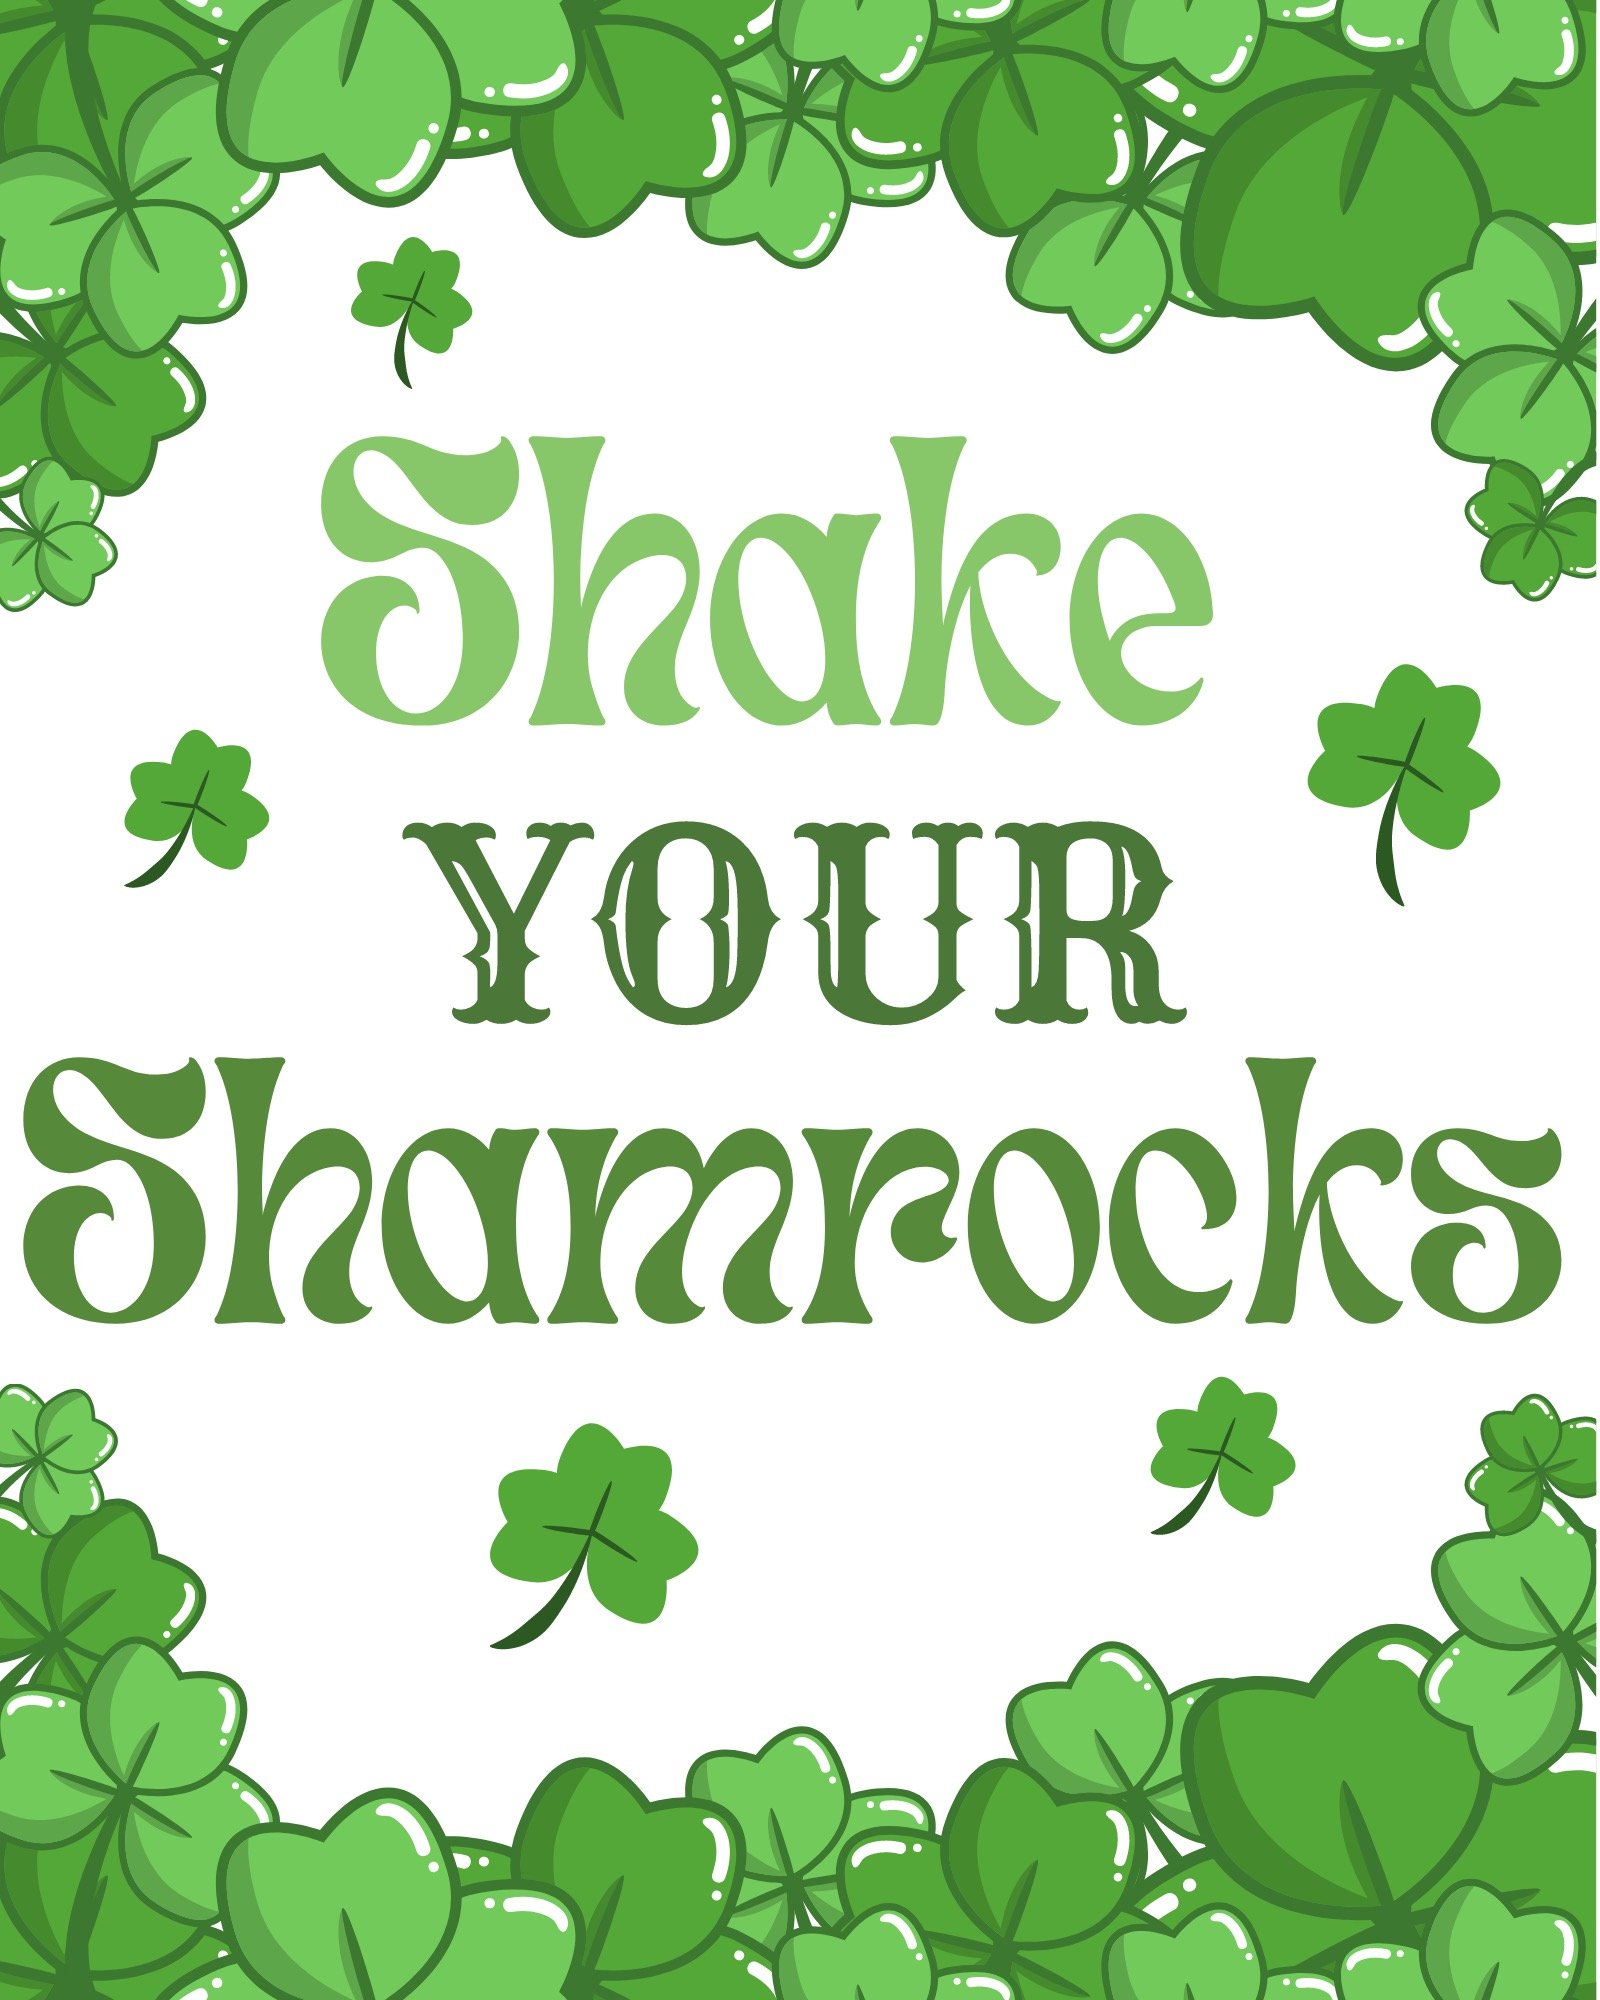 "Shake Your Shamrocks" with shamrocks border